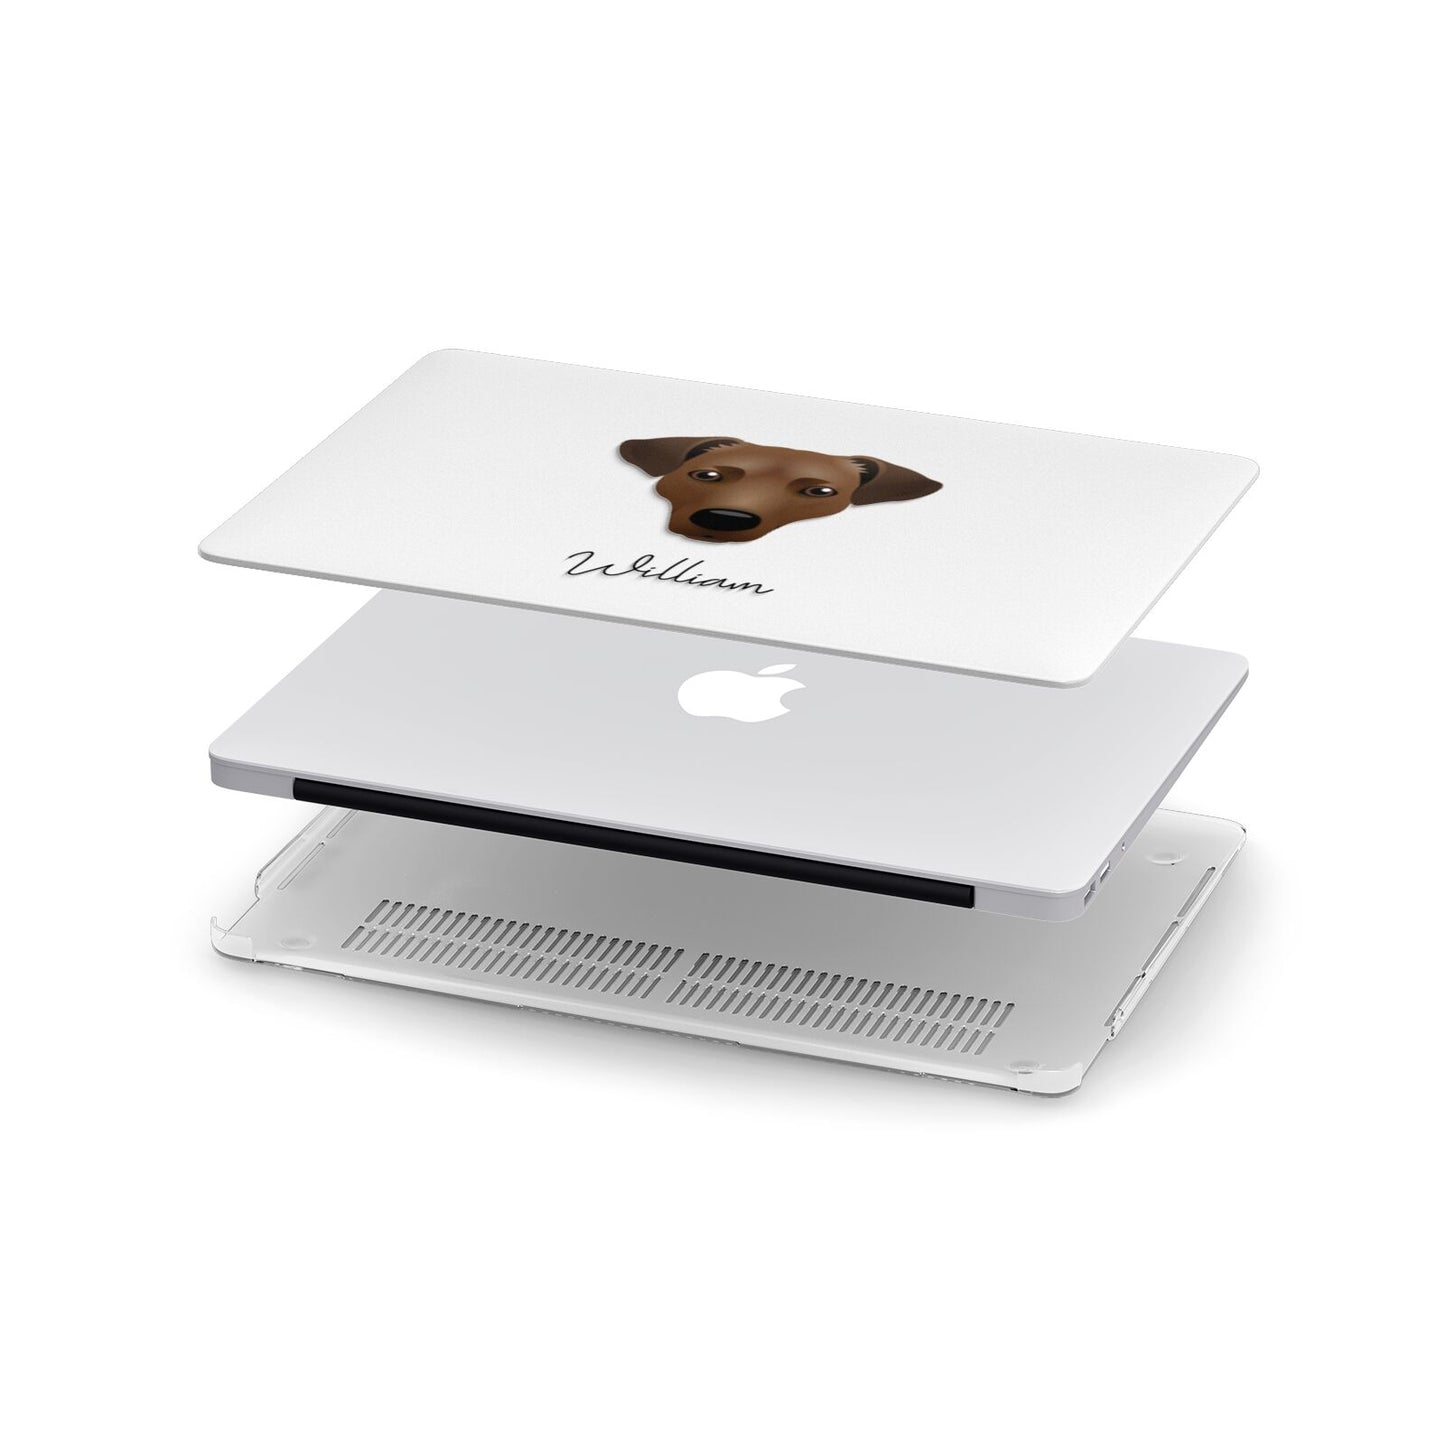 Jack Russell Terrier Personalised Apple MacBook Case in Detail